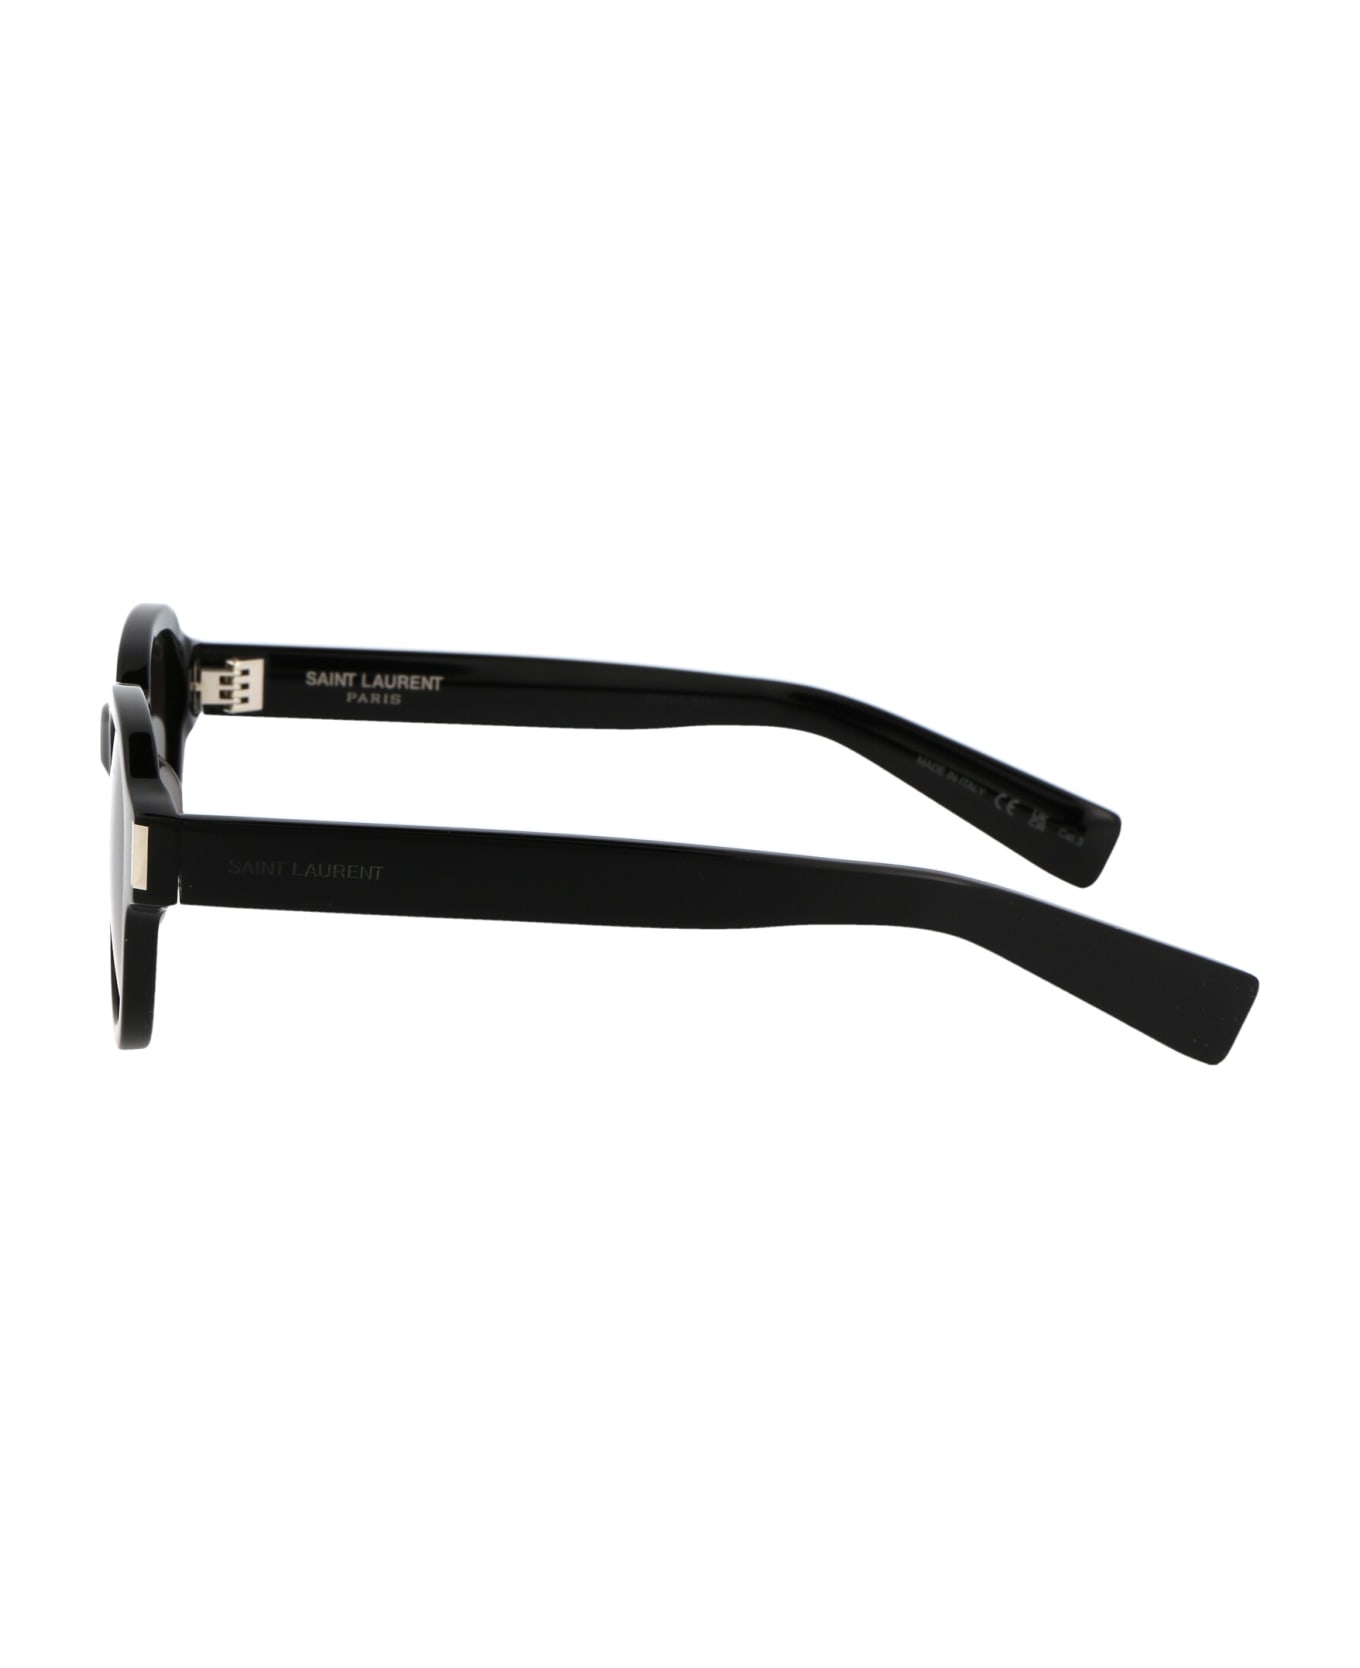 Saint Laurent Eyewear Sl 546 Sunglasses - 001 BLACK BLACK BLACK